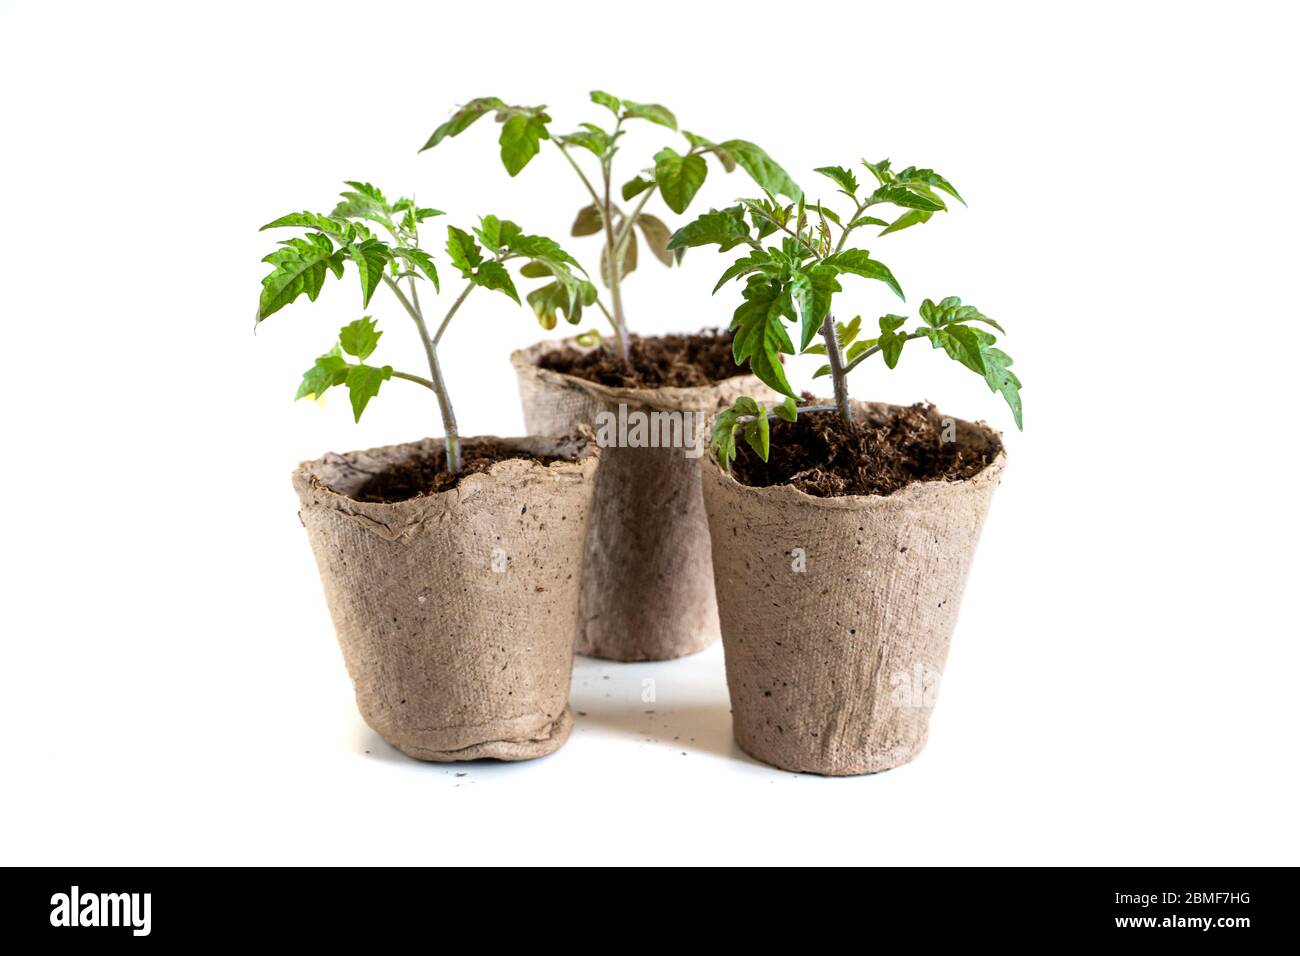 Trasplantar plantas de tomate fotografías e imágenes de alta resolución -  Alamy